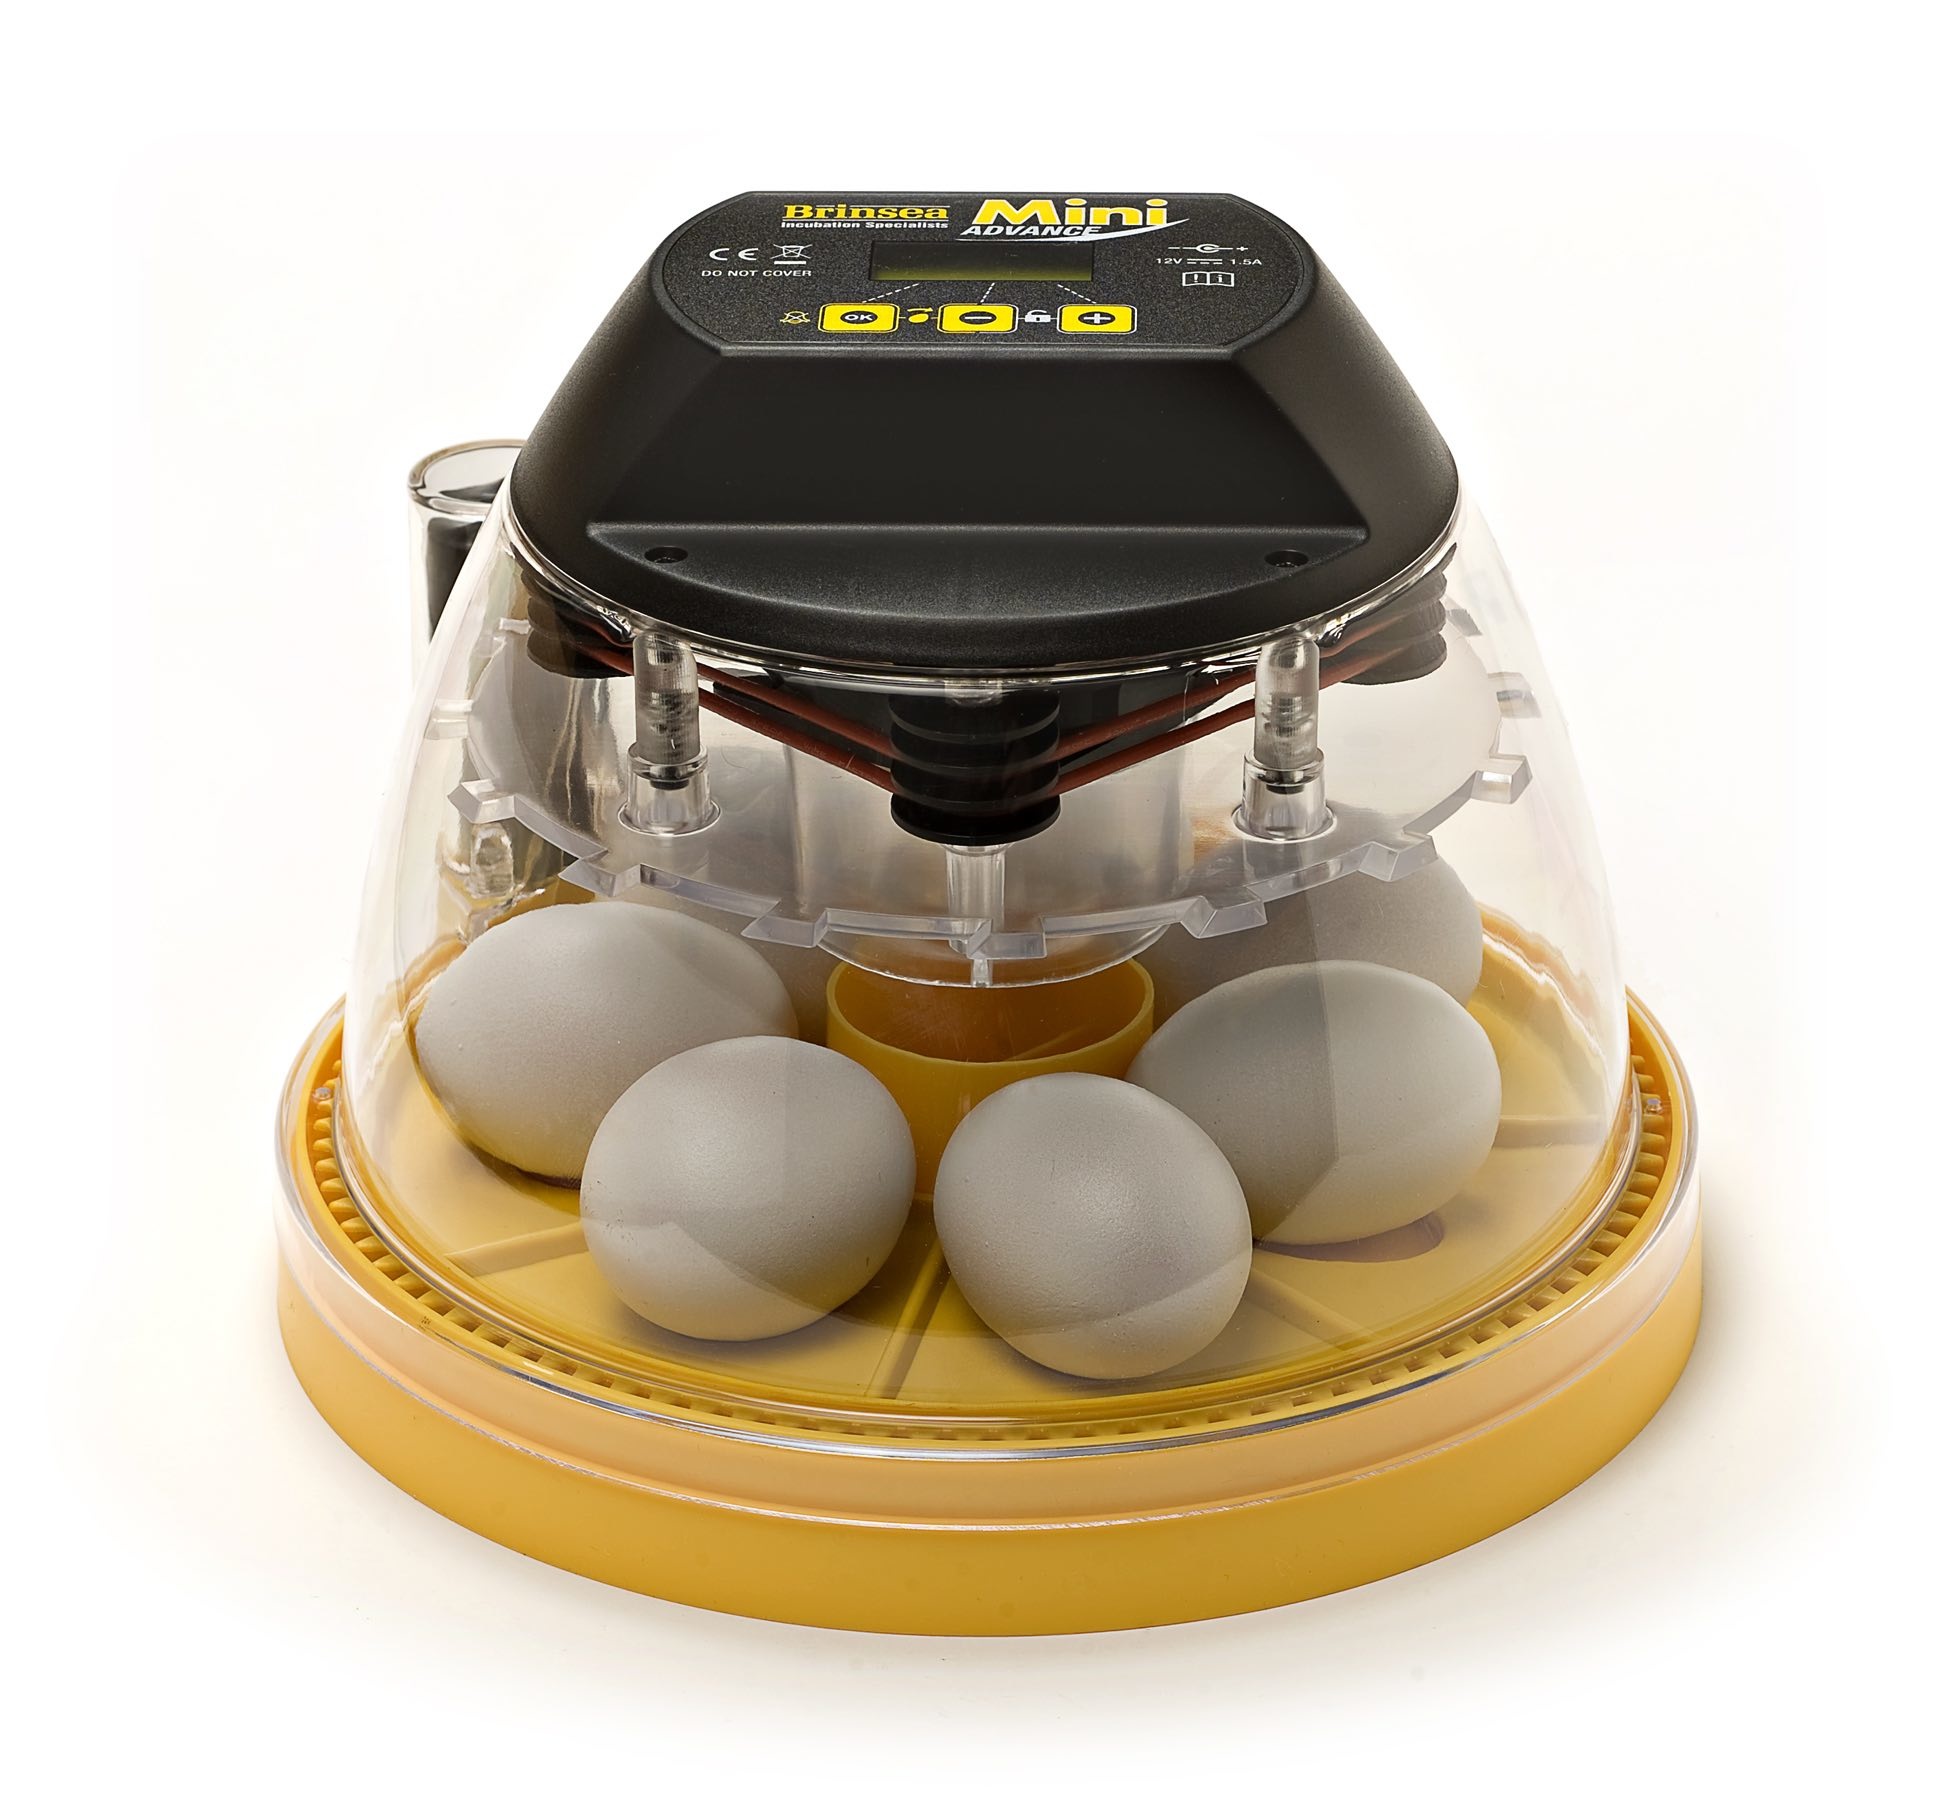 Мини инкубатор купить. Инкубатор Egg incubator 6. Инкубатор Egg incubator. Автоматический инкубатор Brinsea. Инкубатор Brinsea 70 яиц.